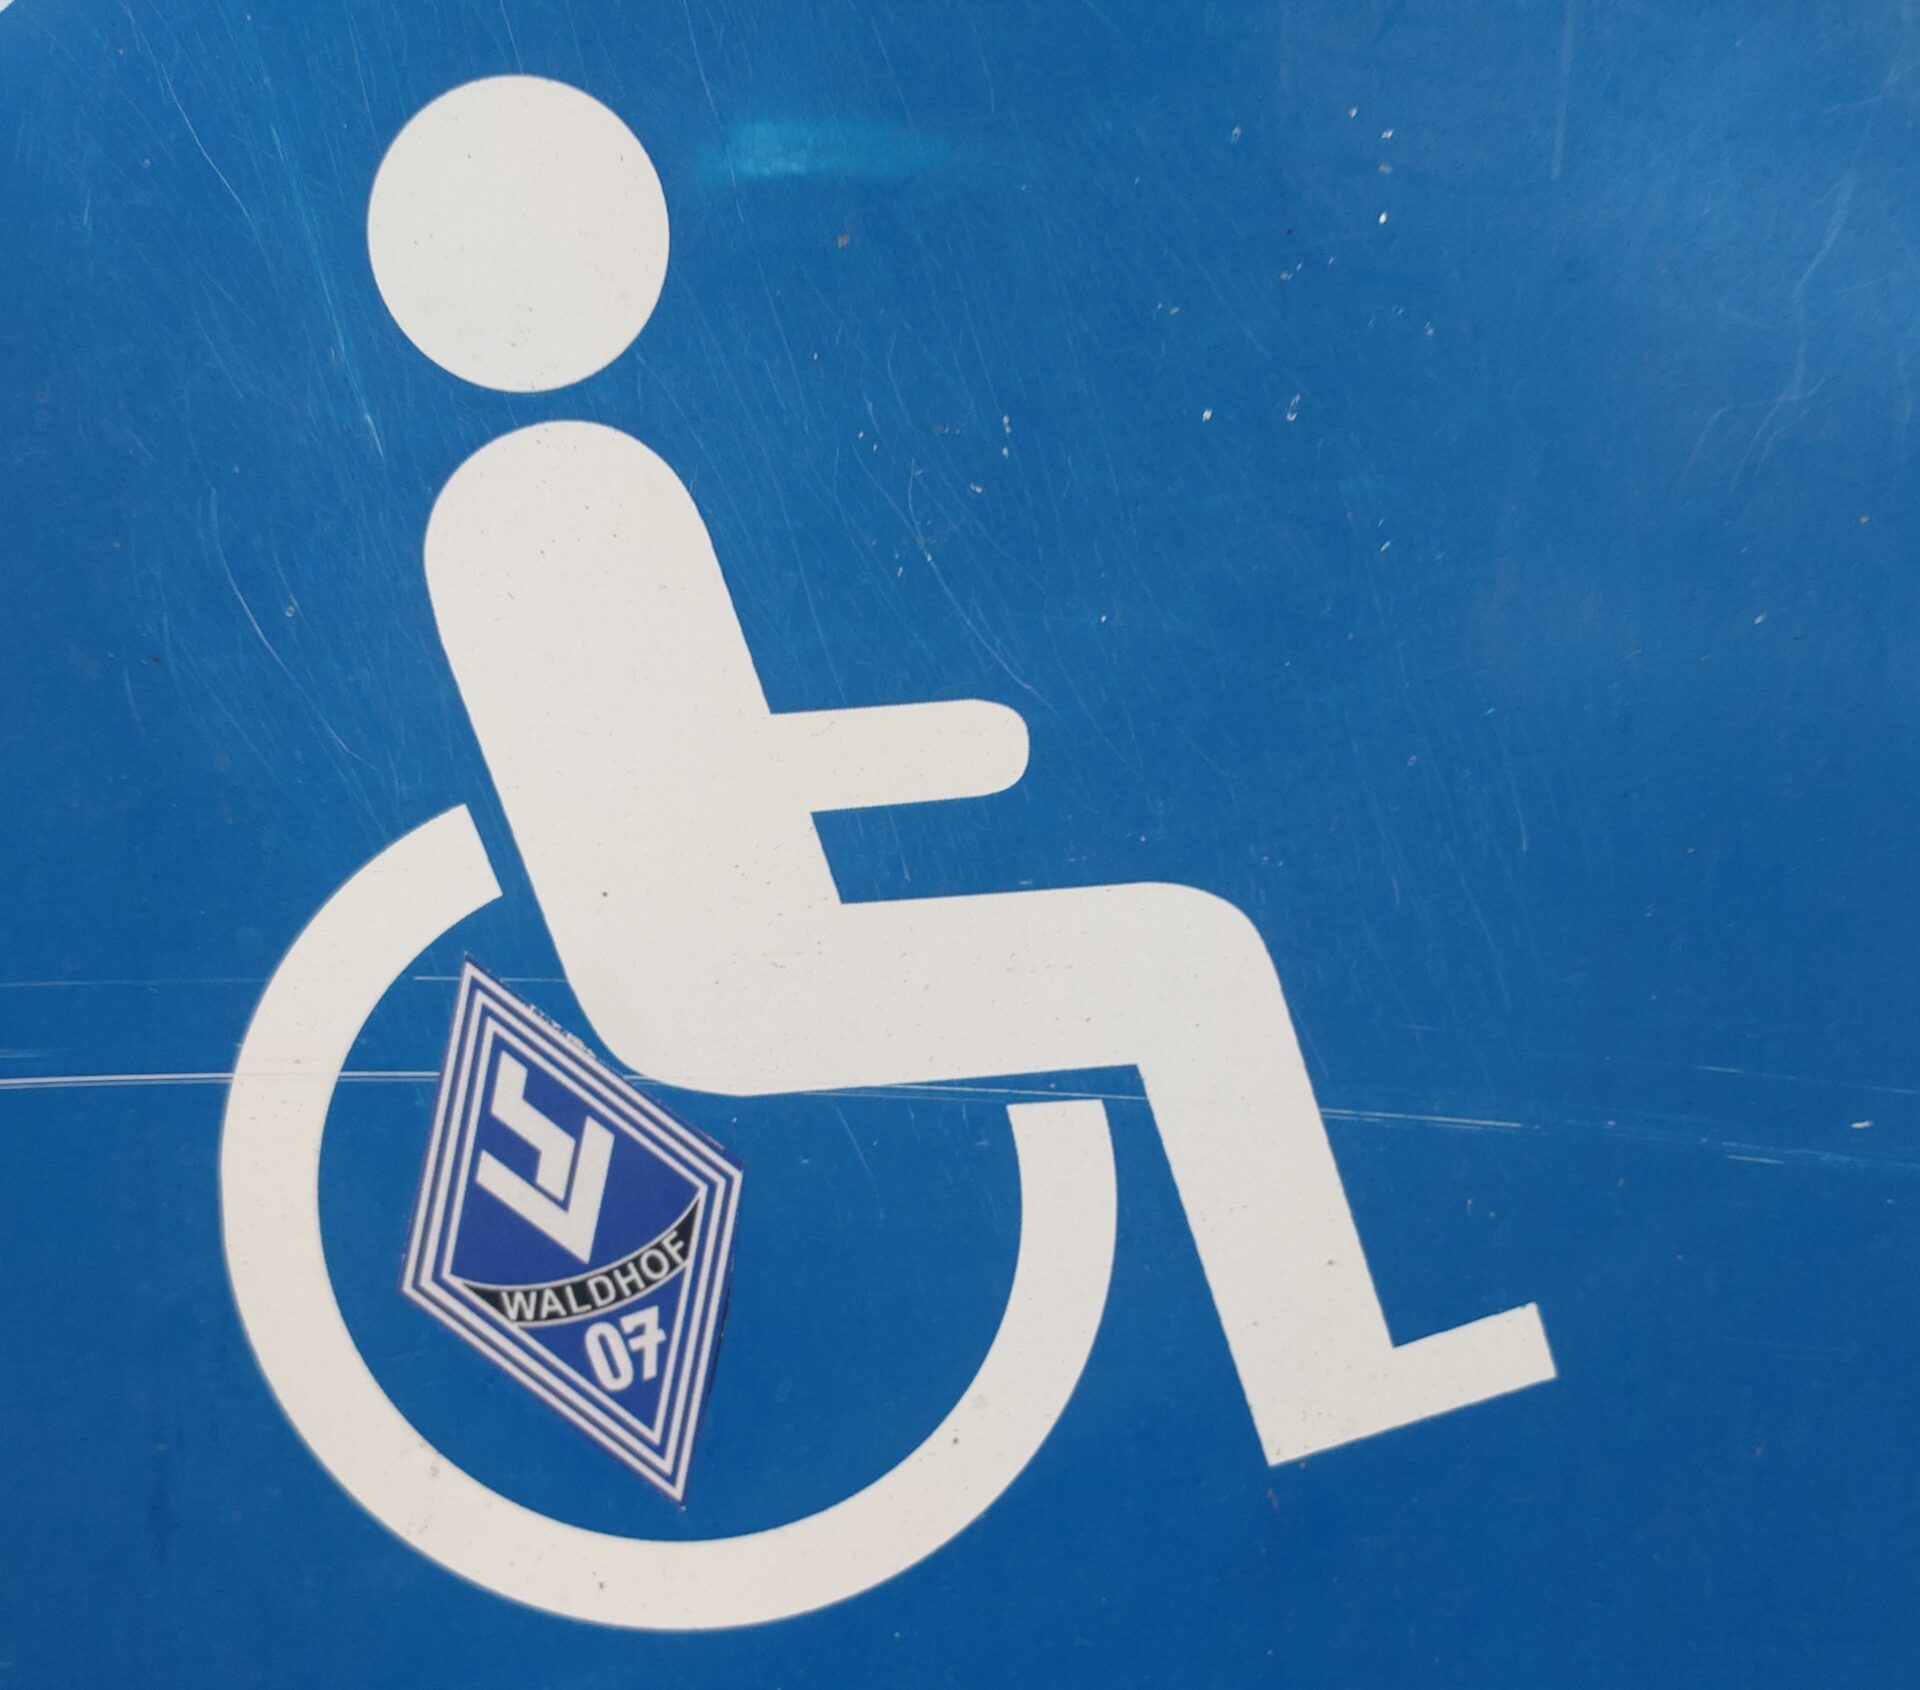 Stadion für alle! - Zum Aktionstag für Menschen mit Behinderung im CBS